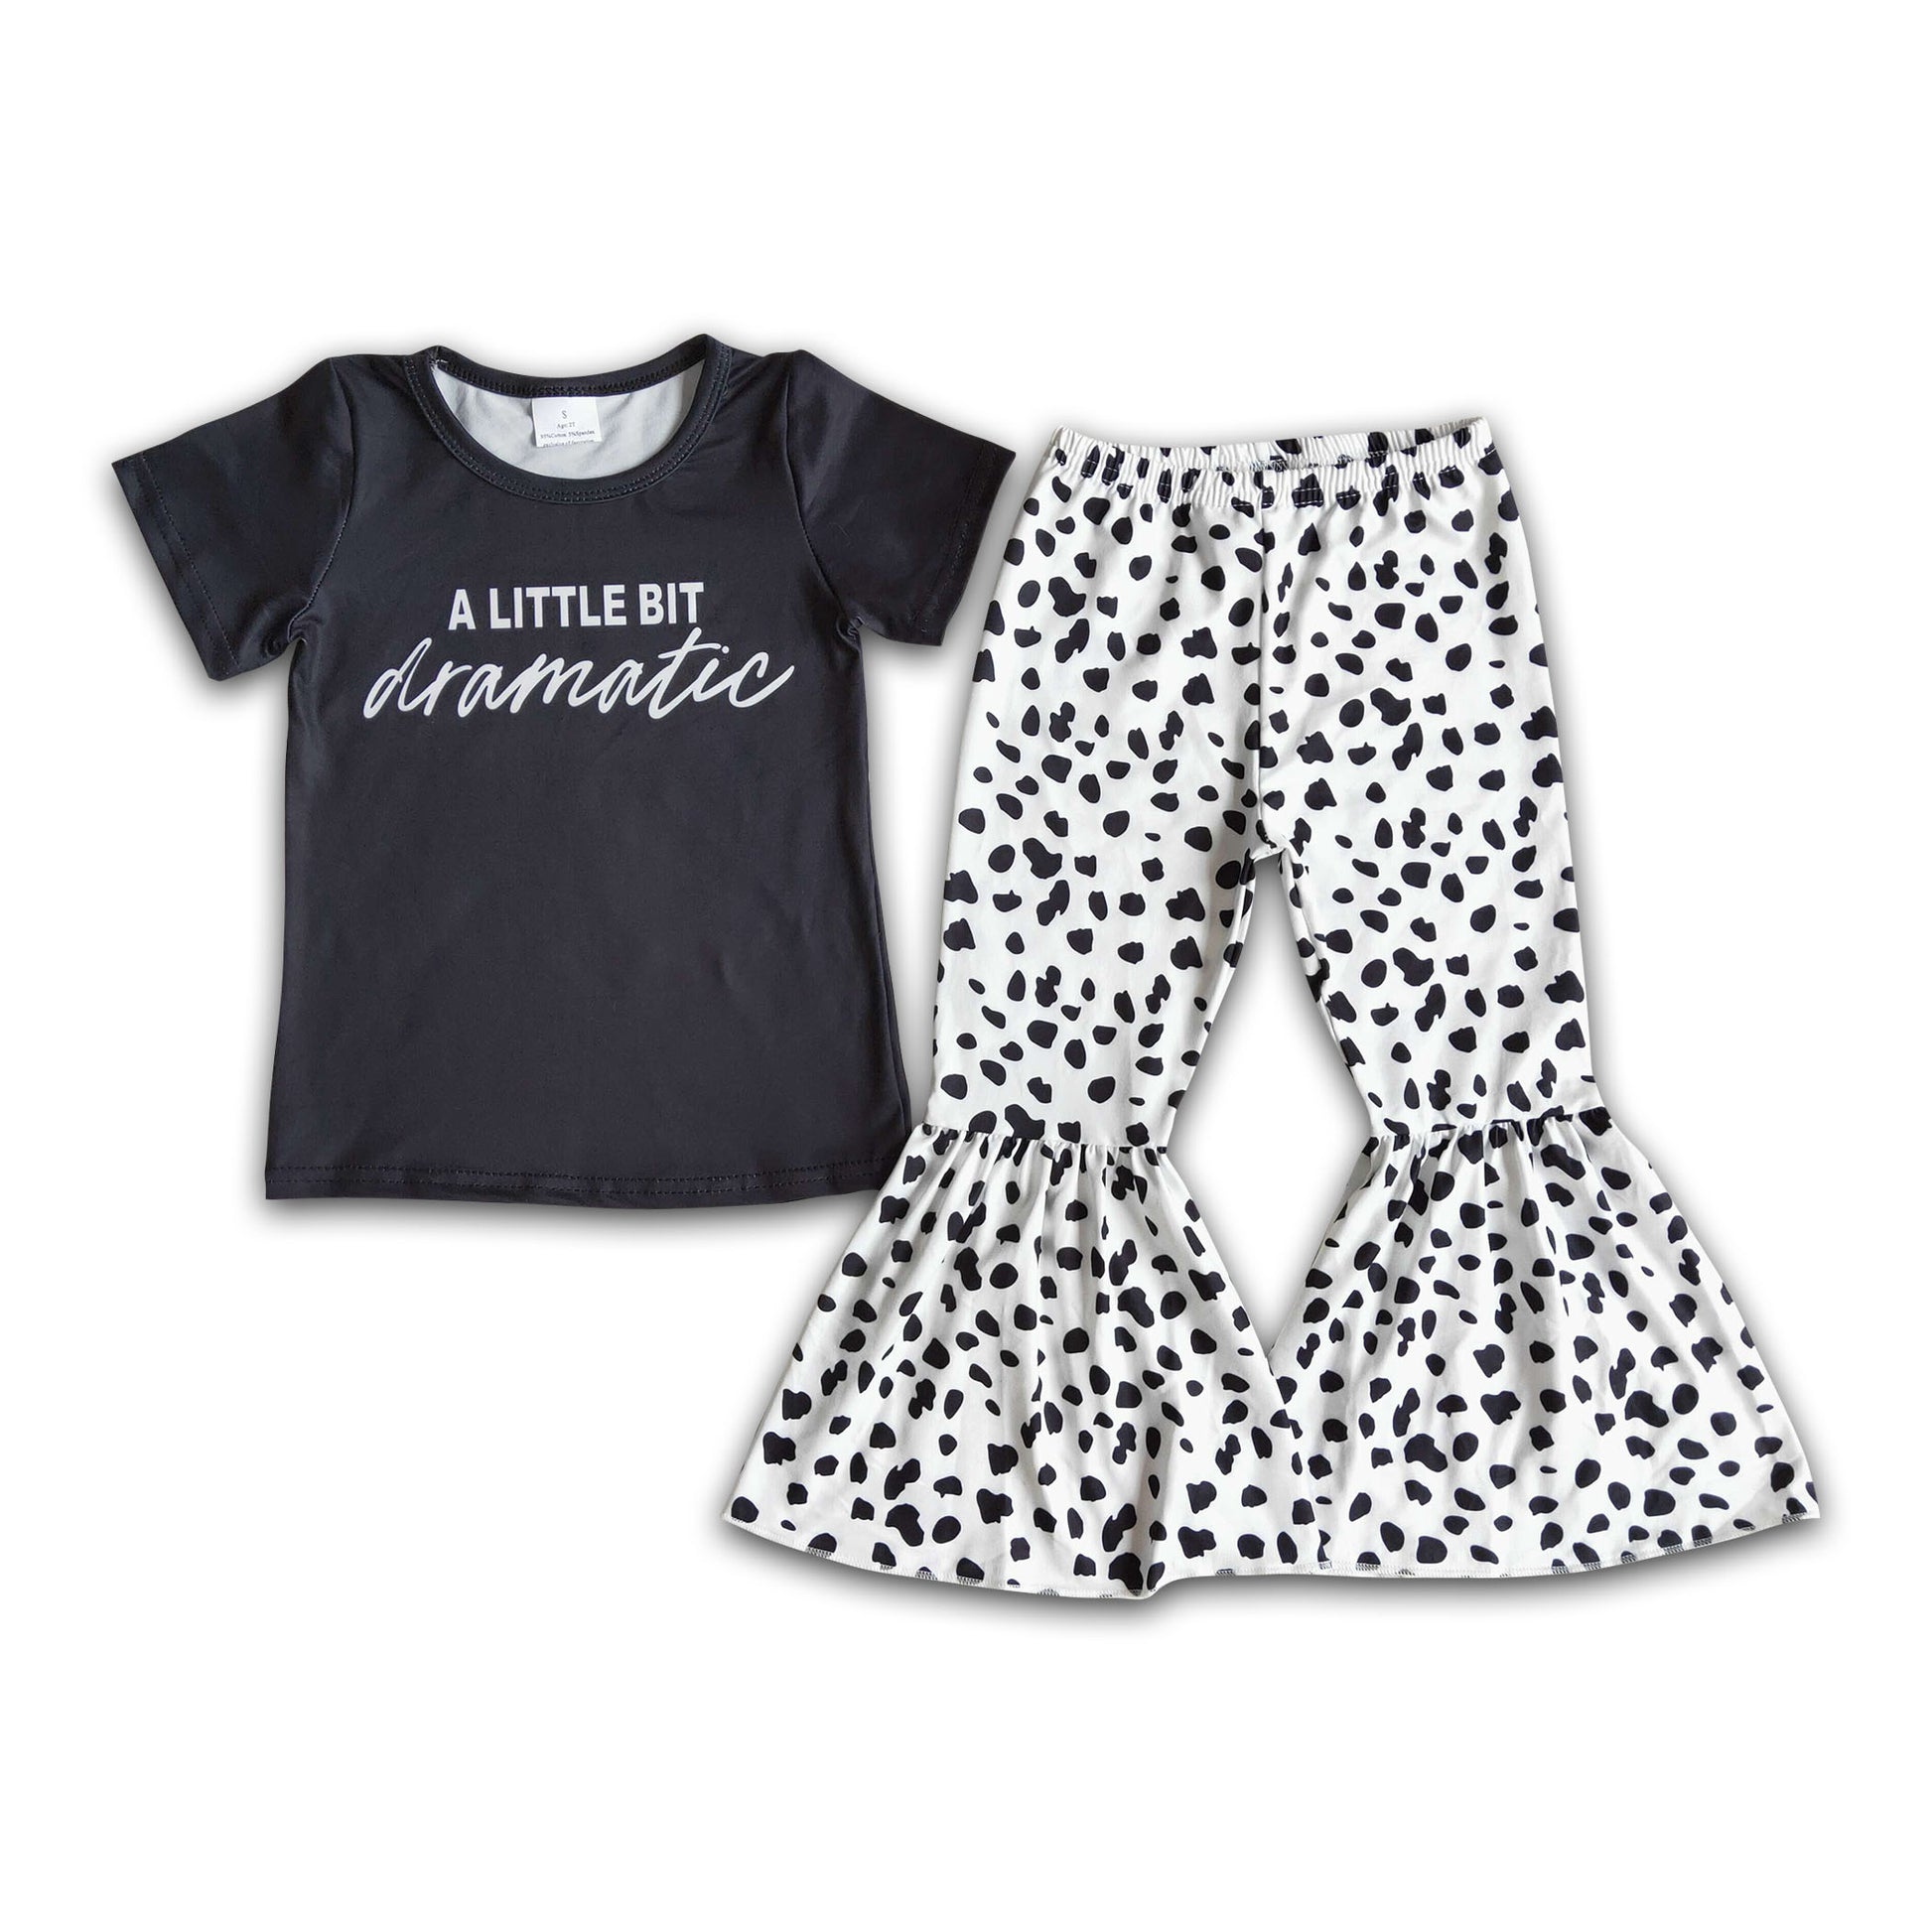 A little bit dramatic shirt leopard pants girls boutique clothes ...